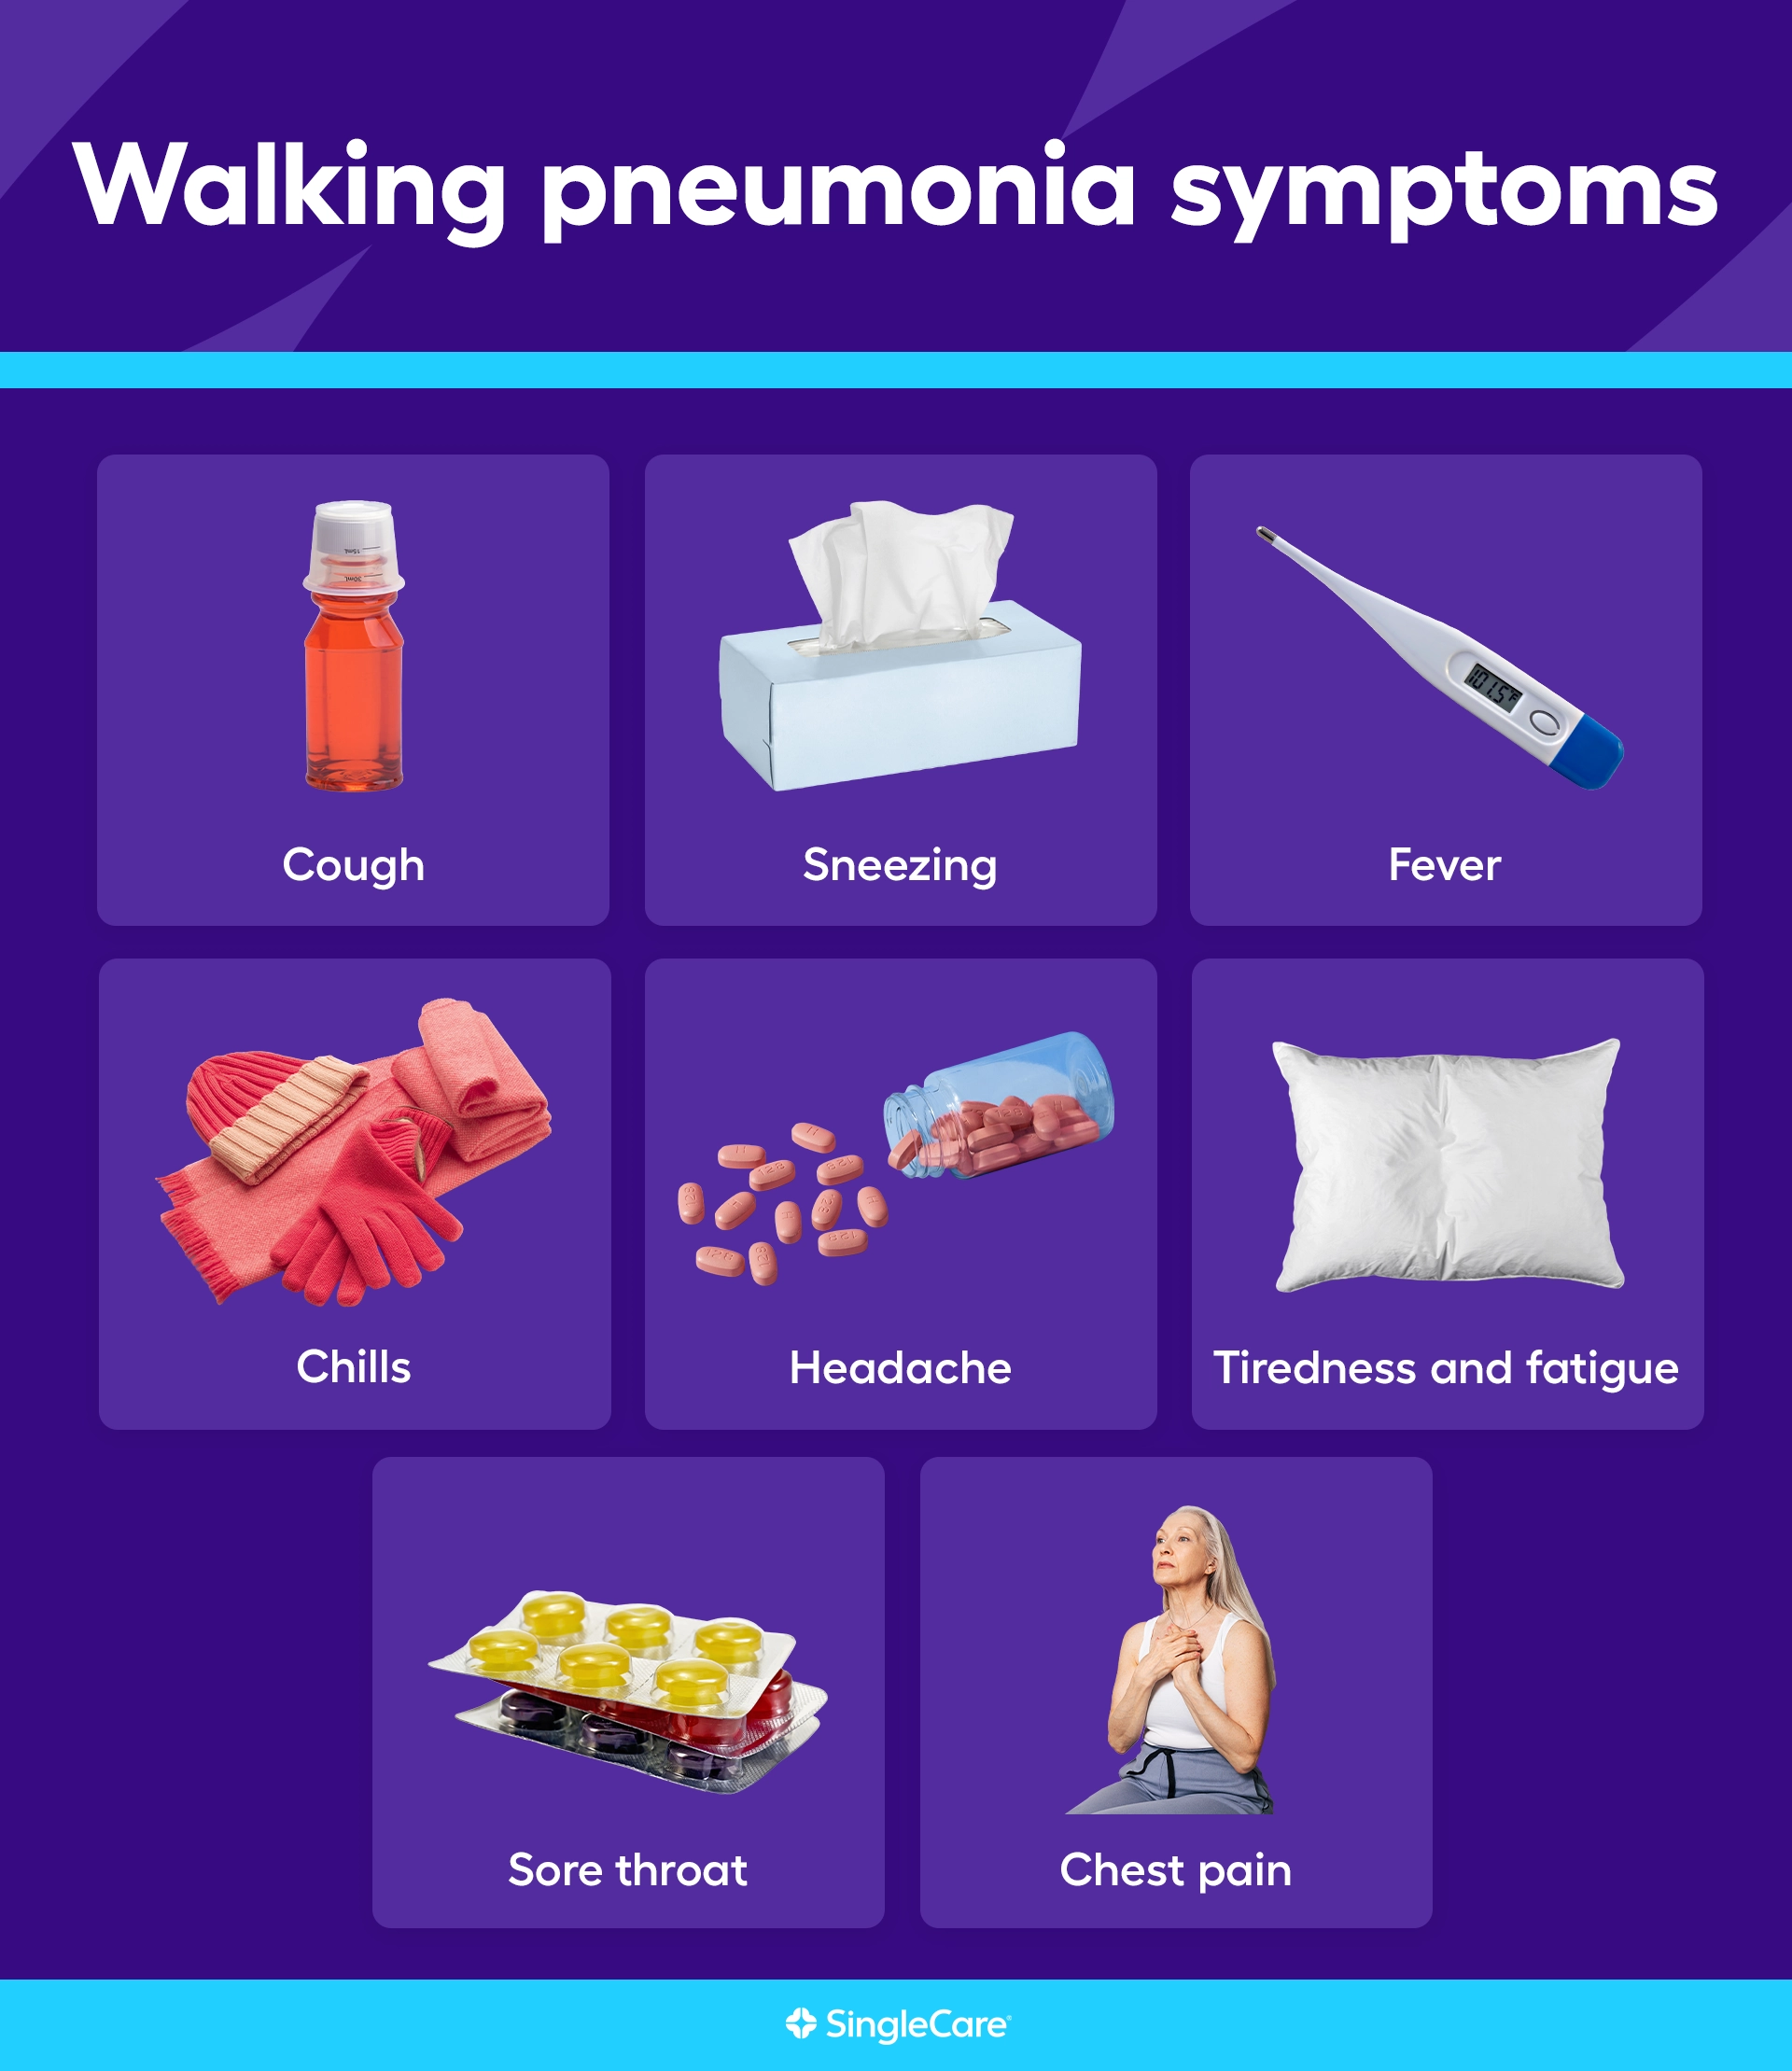 Signs of walking pneumonia